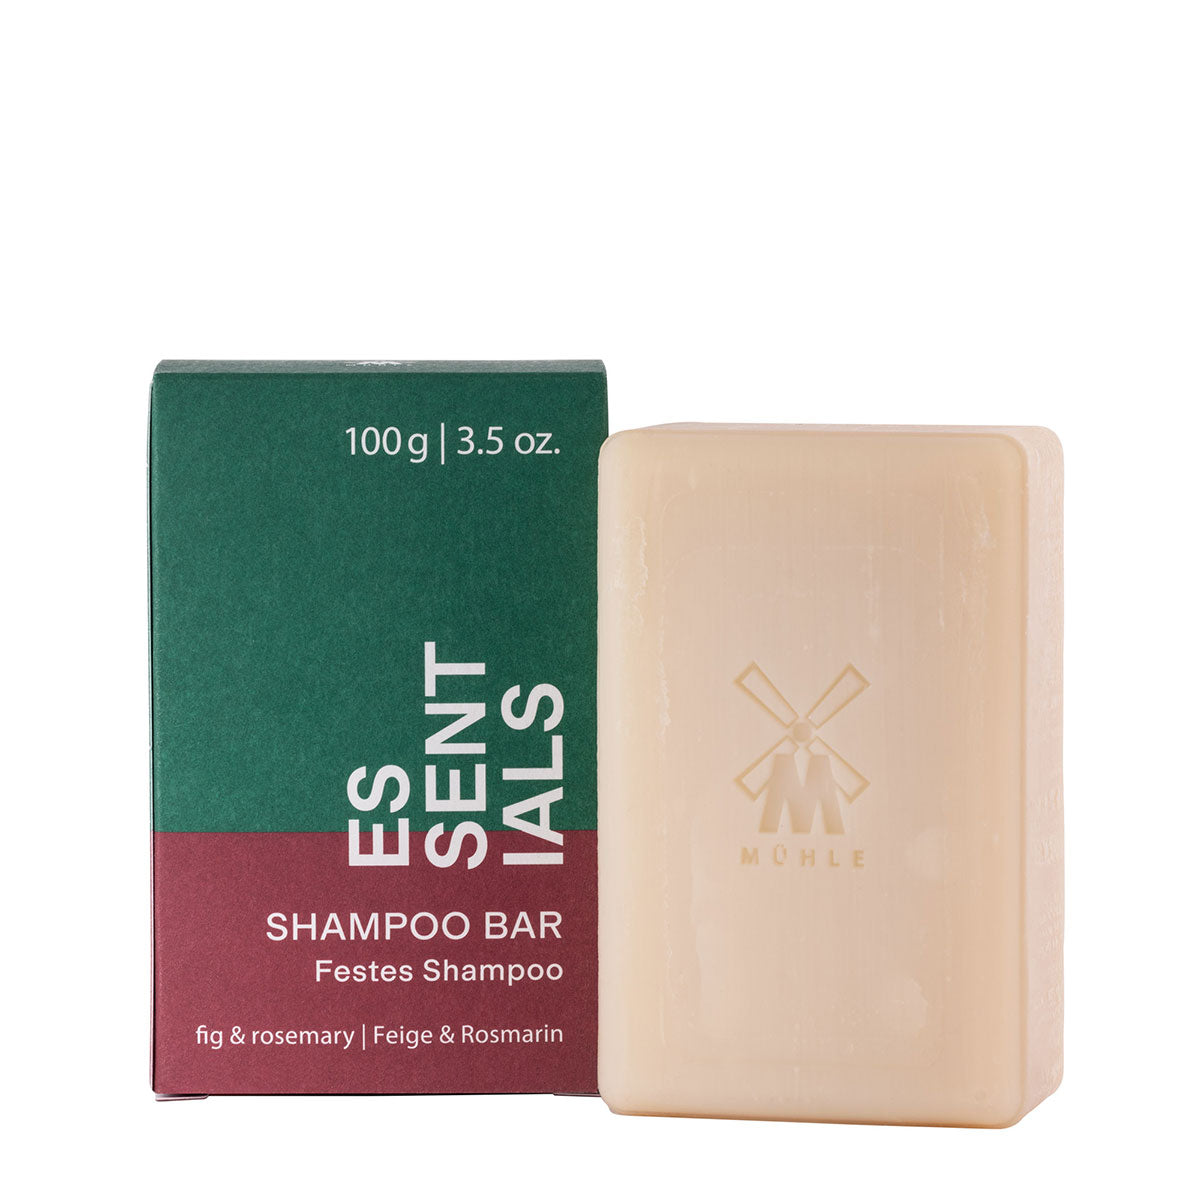 MÜHLE Essentials Fig & Rosemary Shampoo Bar (100g)